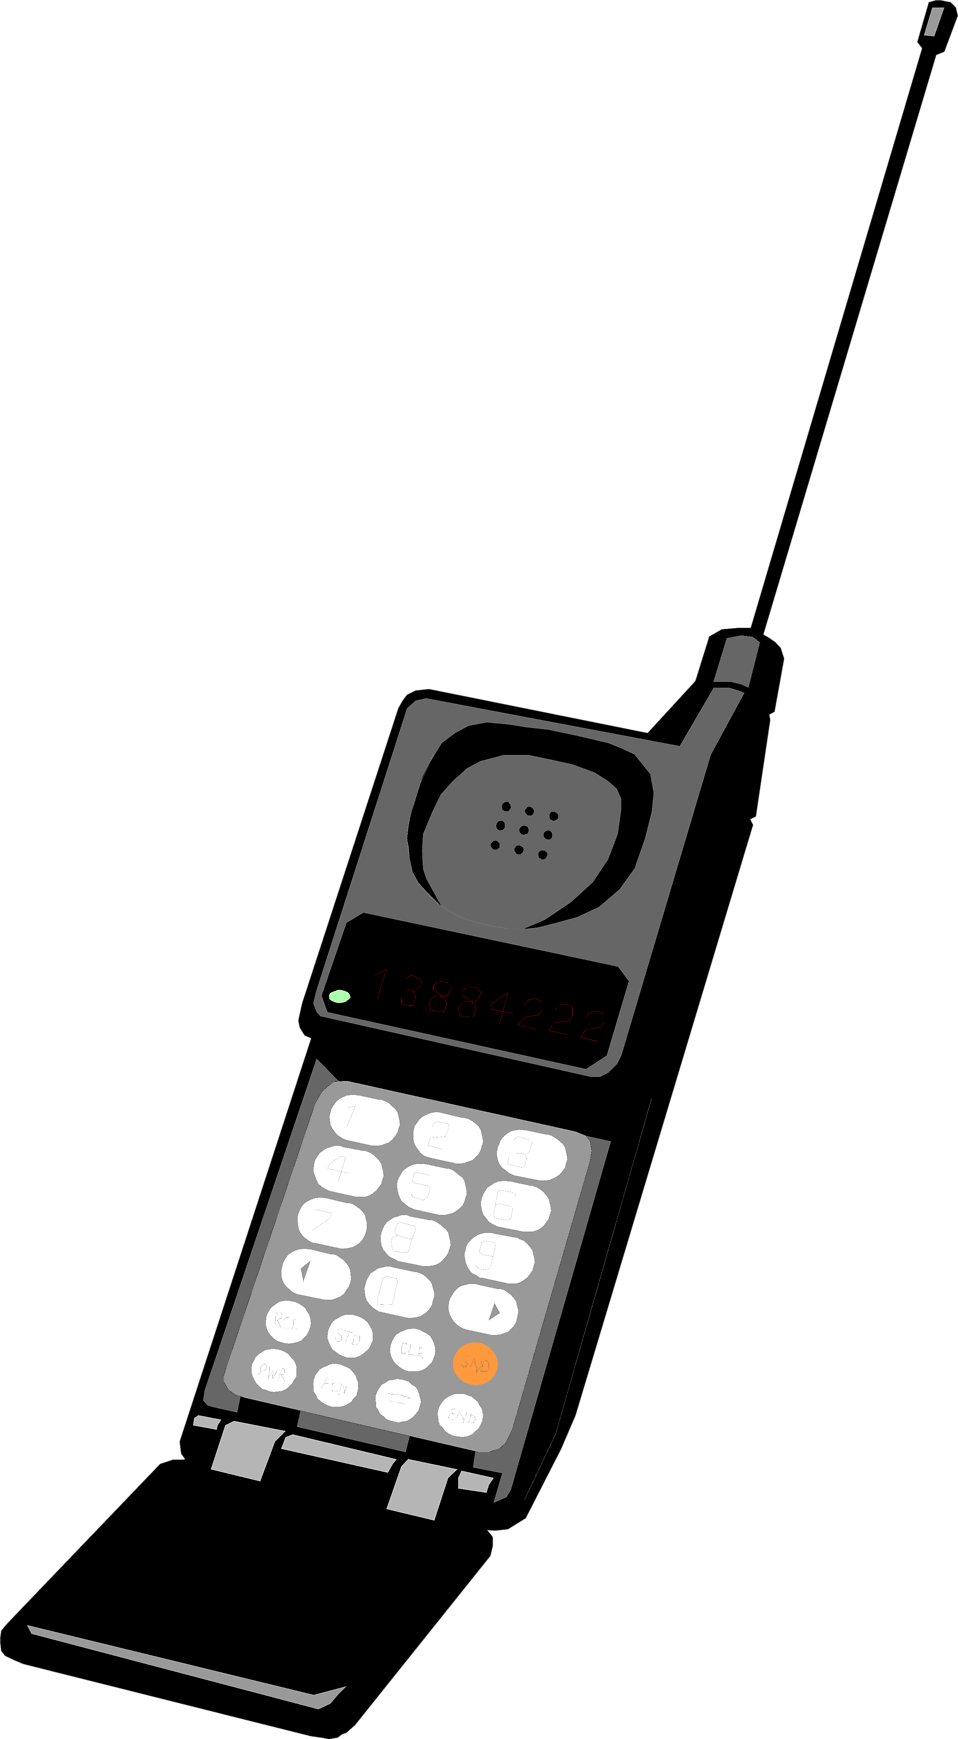 Старый телефон с антенной. Motorola MICROTAC 9800x. Сотовый телефон с выдвижной антенной. Мобильный радиотелефон с антенной. Мобильник с антенной.